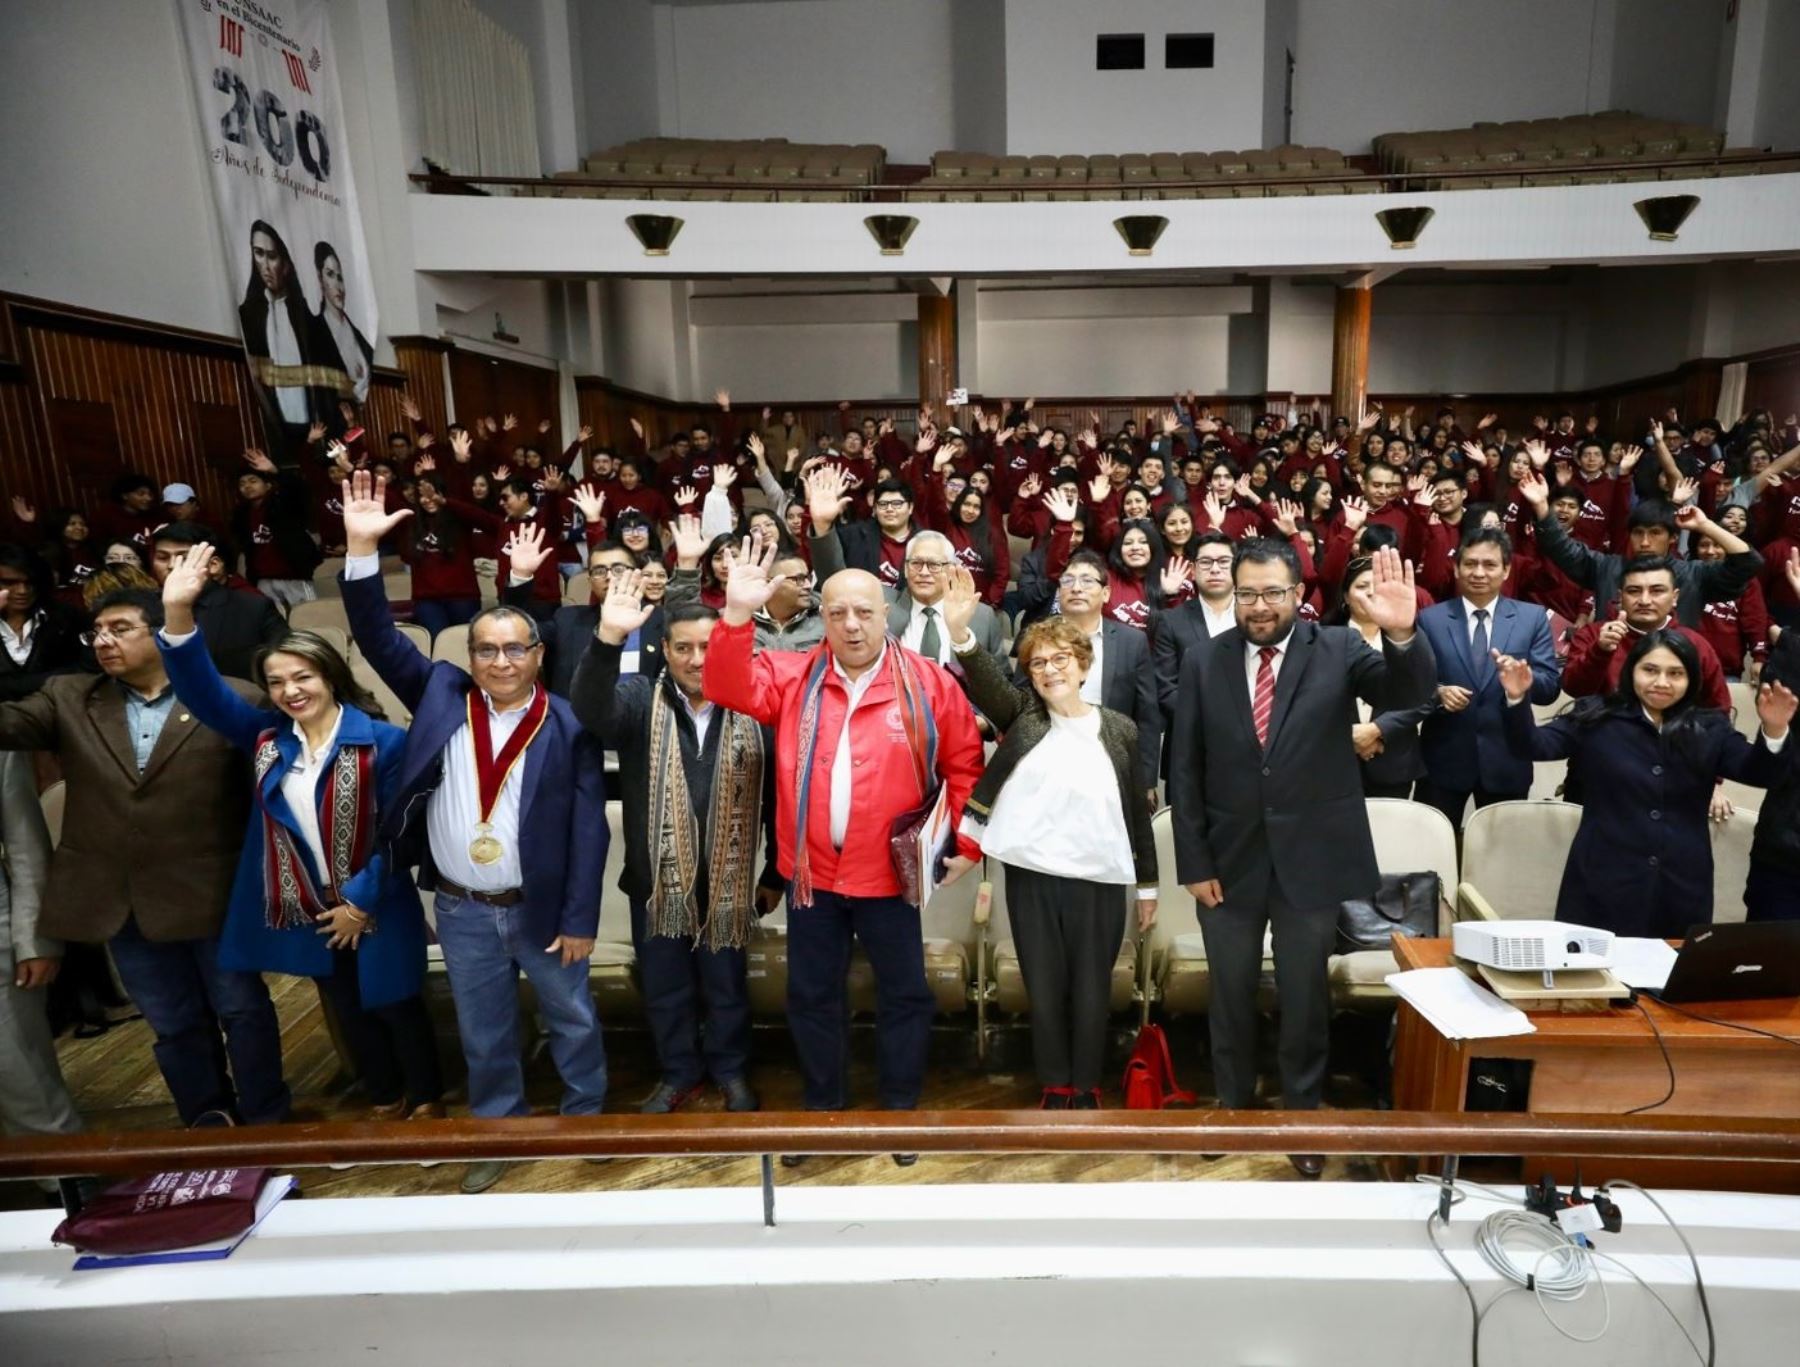 Durante Encuentro Nacional de Jóvenes para el Diálogo Sociolaboral, celebrado en Cusco, el ministro de Trabajo, Alberto Adrianzén, anunció que se brindará capacitación laboral gratuita a más de 700 jóvenes cusqueños. ANDINA/Difusión